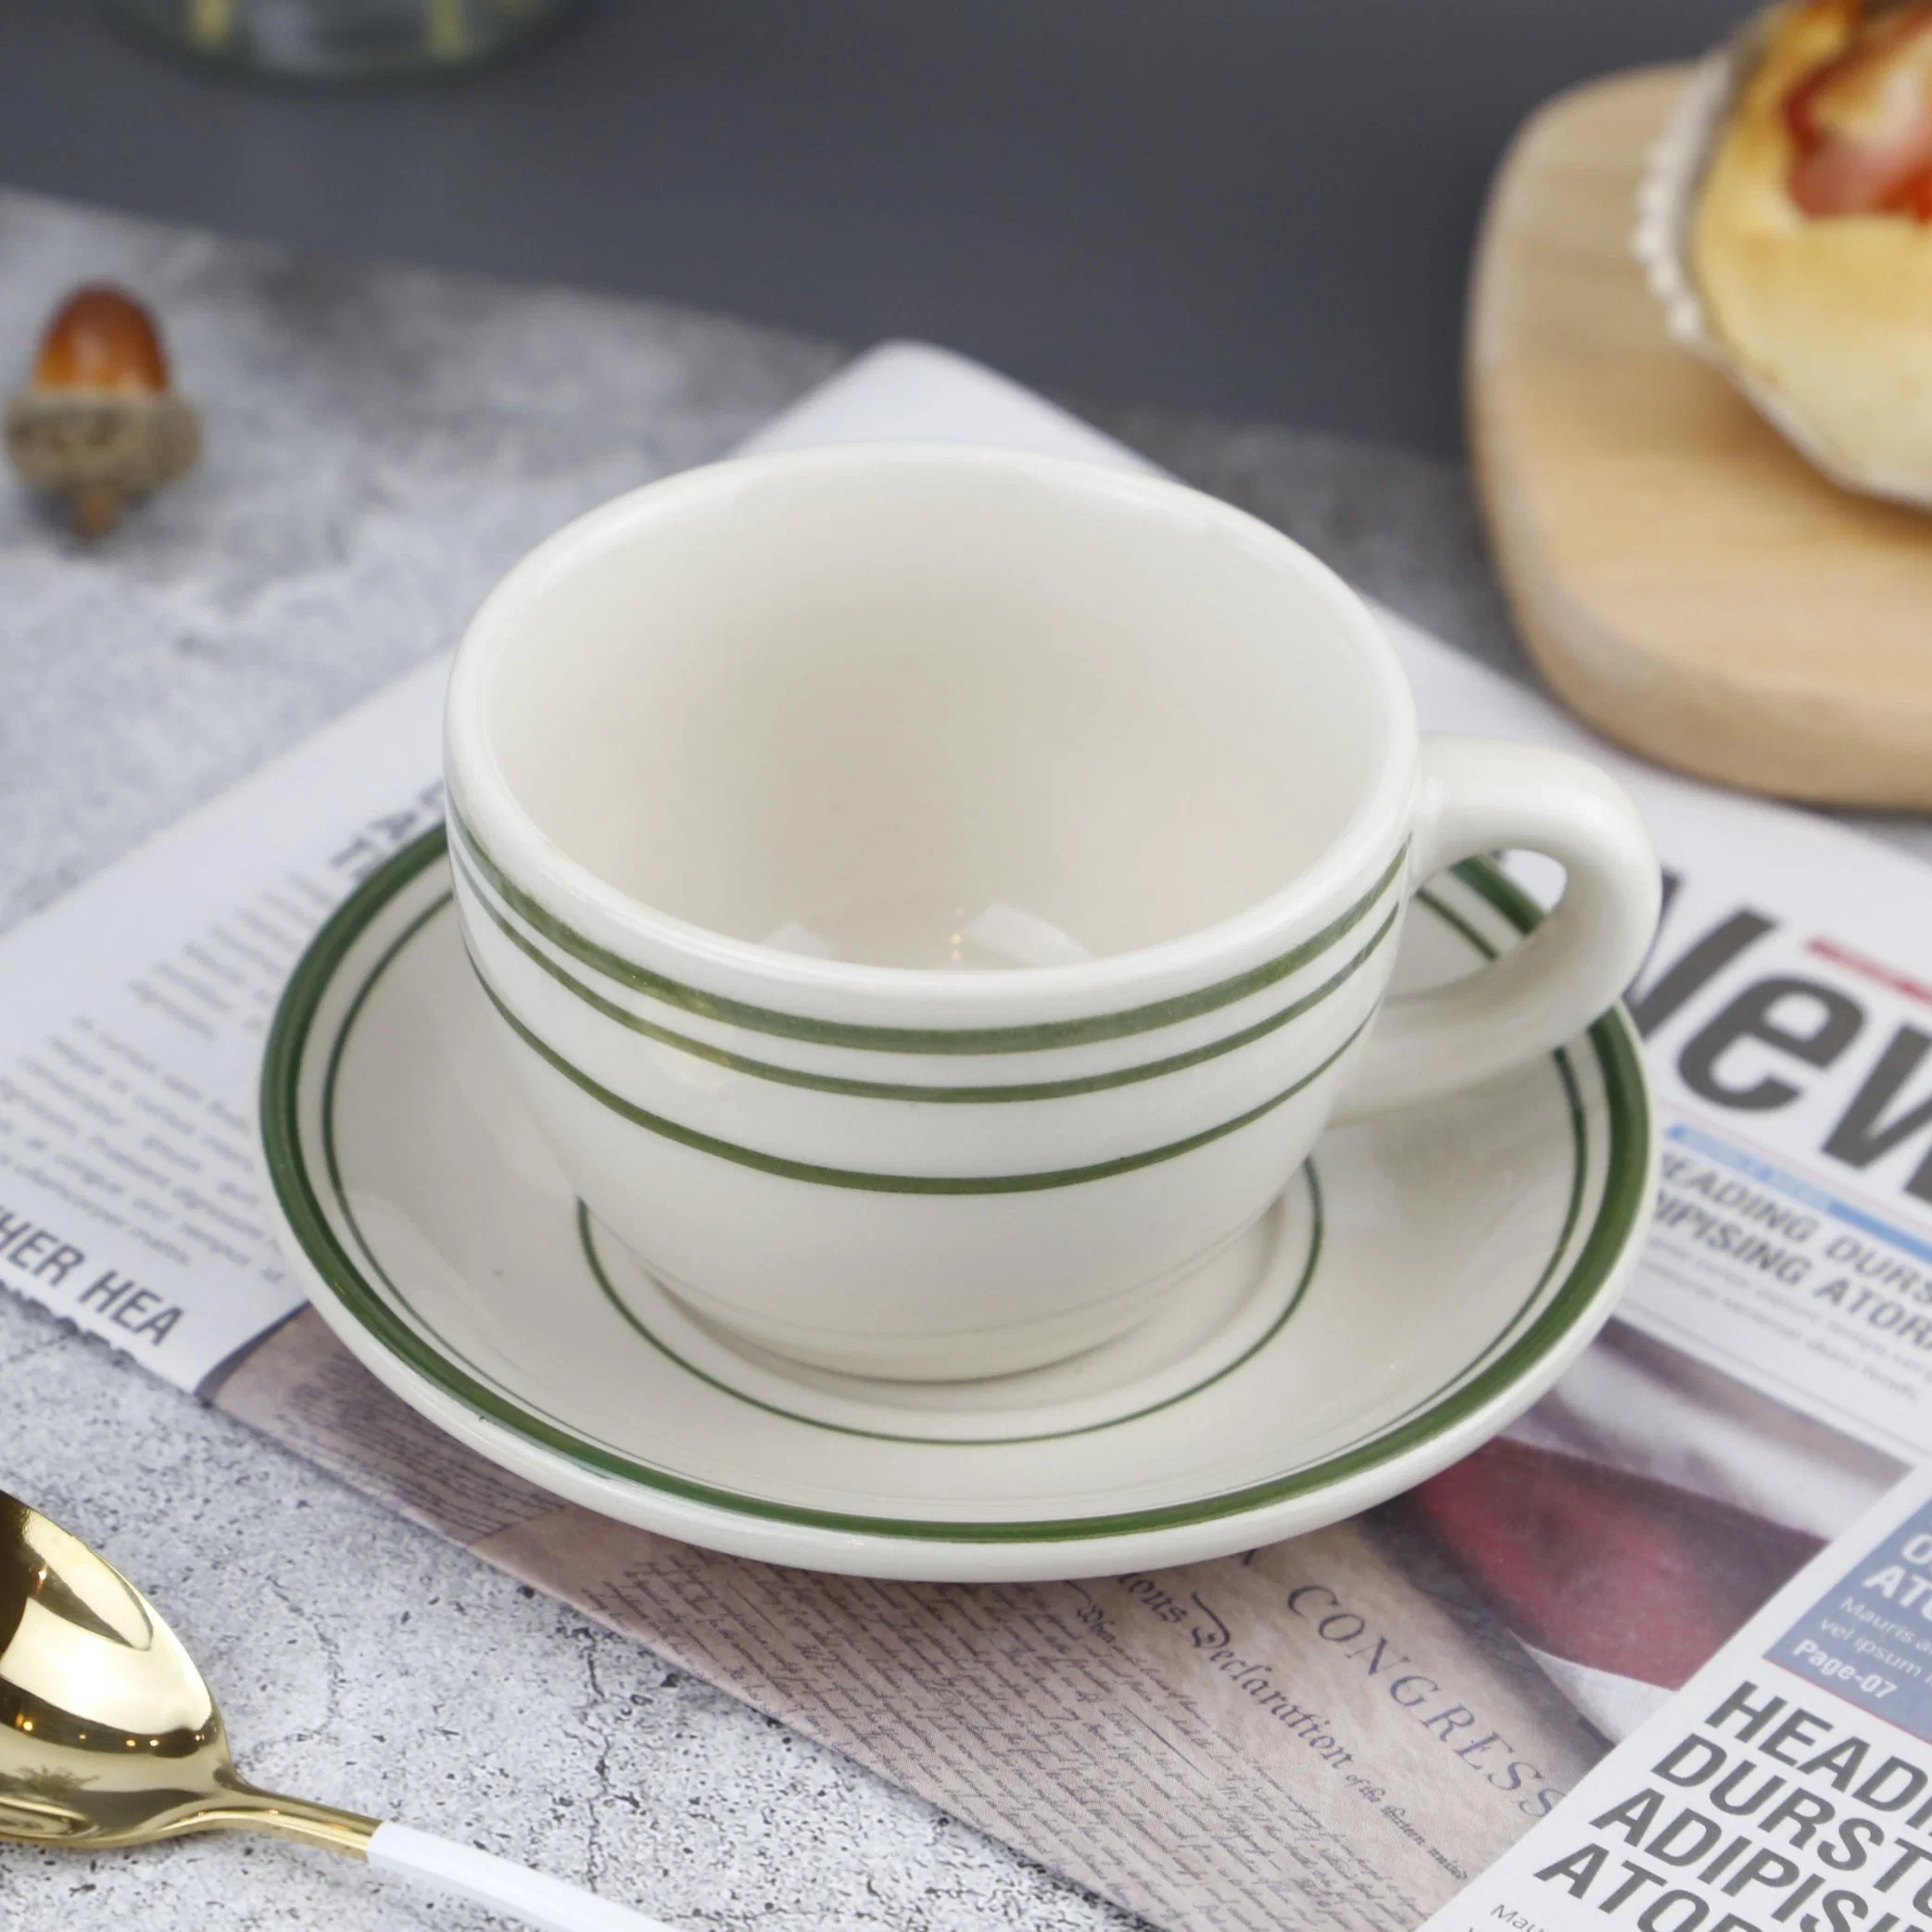 Hote Sale Calsic Keramik Green Line Kaffee Tasse Set für Restaurantnutzung